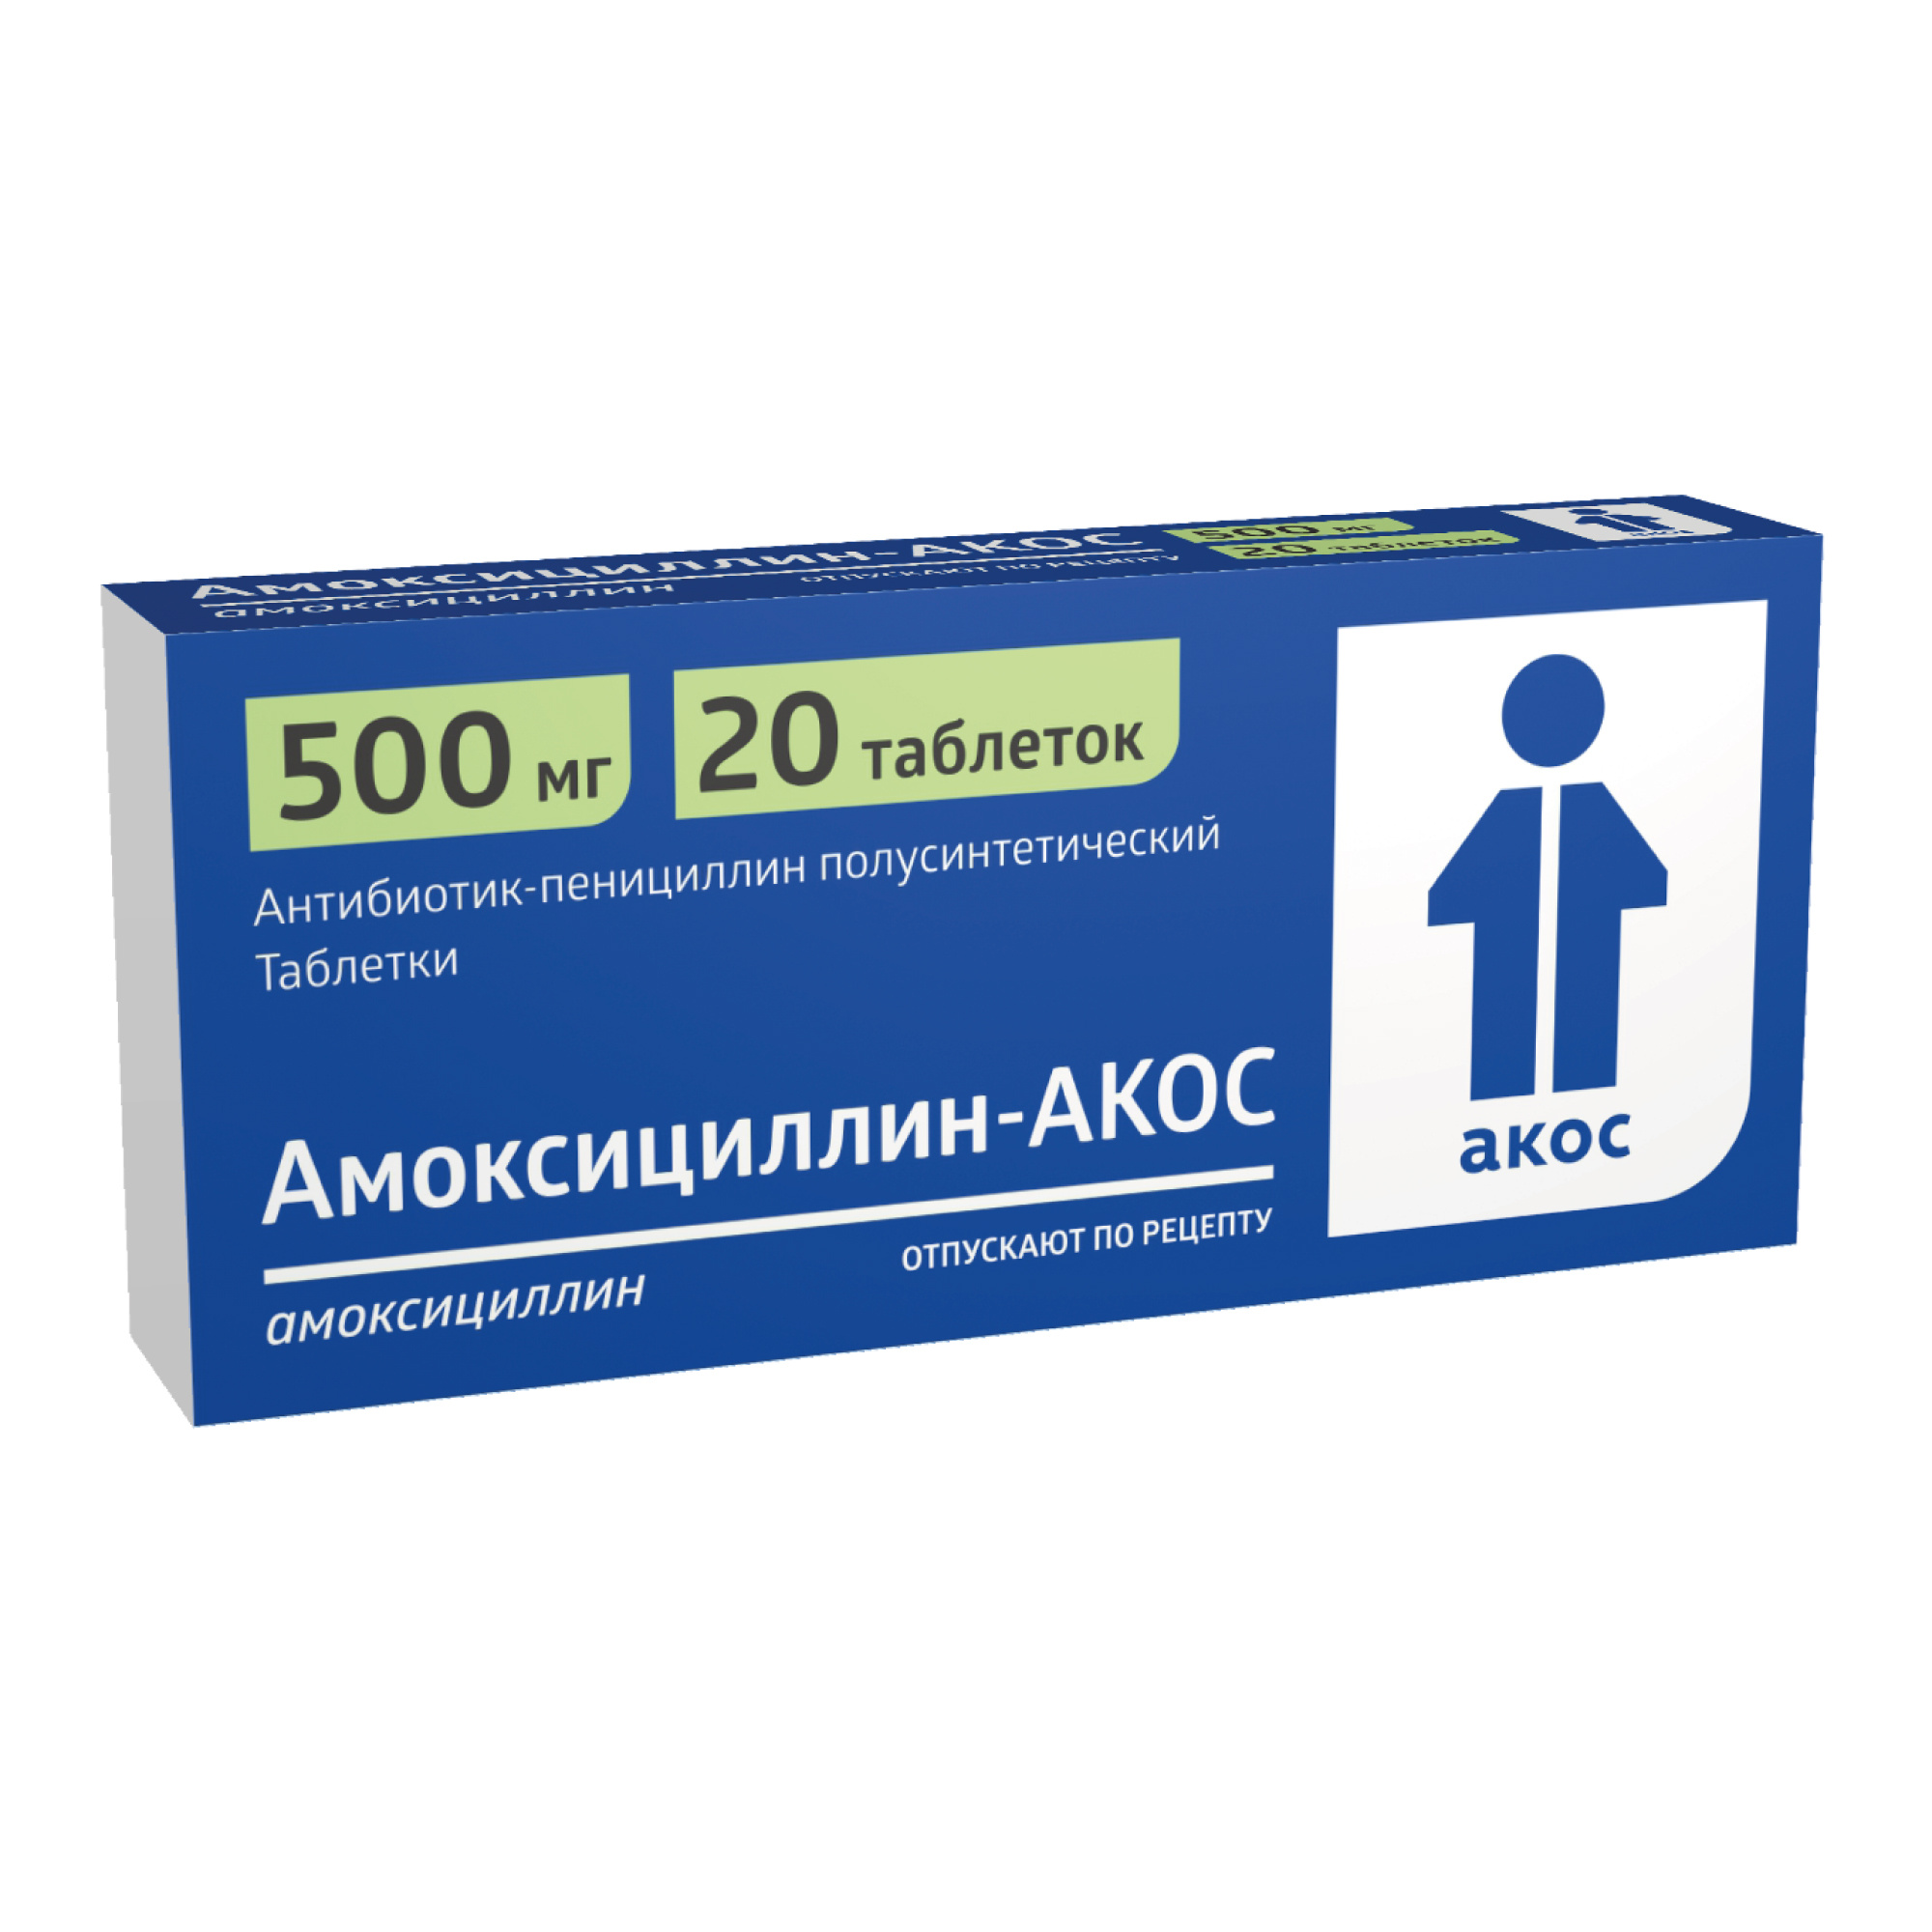 Амоксициллин-Акос таблетки 500мг 20шт - купить в Москве лекарство  Амоксициллин-Акос таблетки 500мг 20шт, официальная инструкция по применению